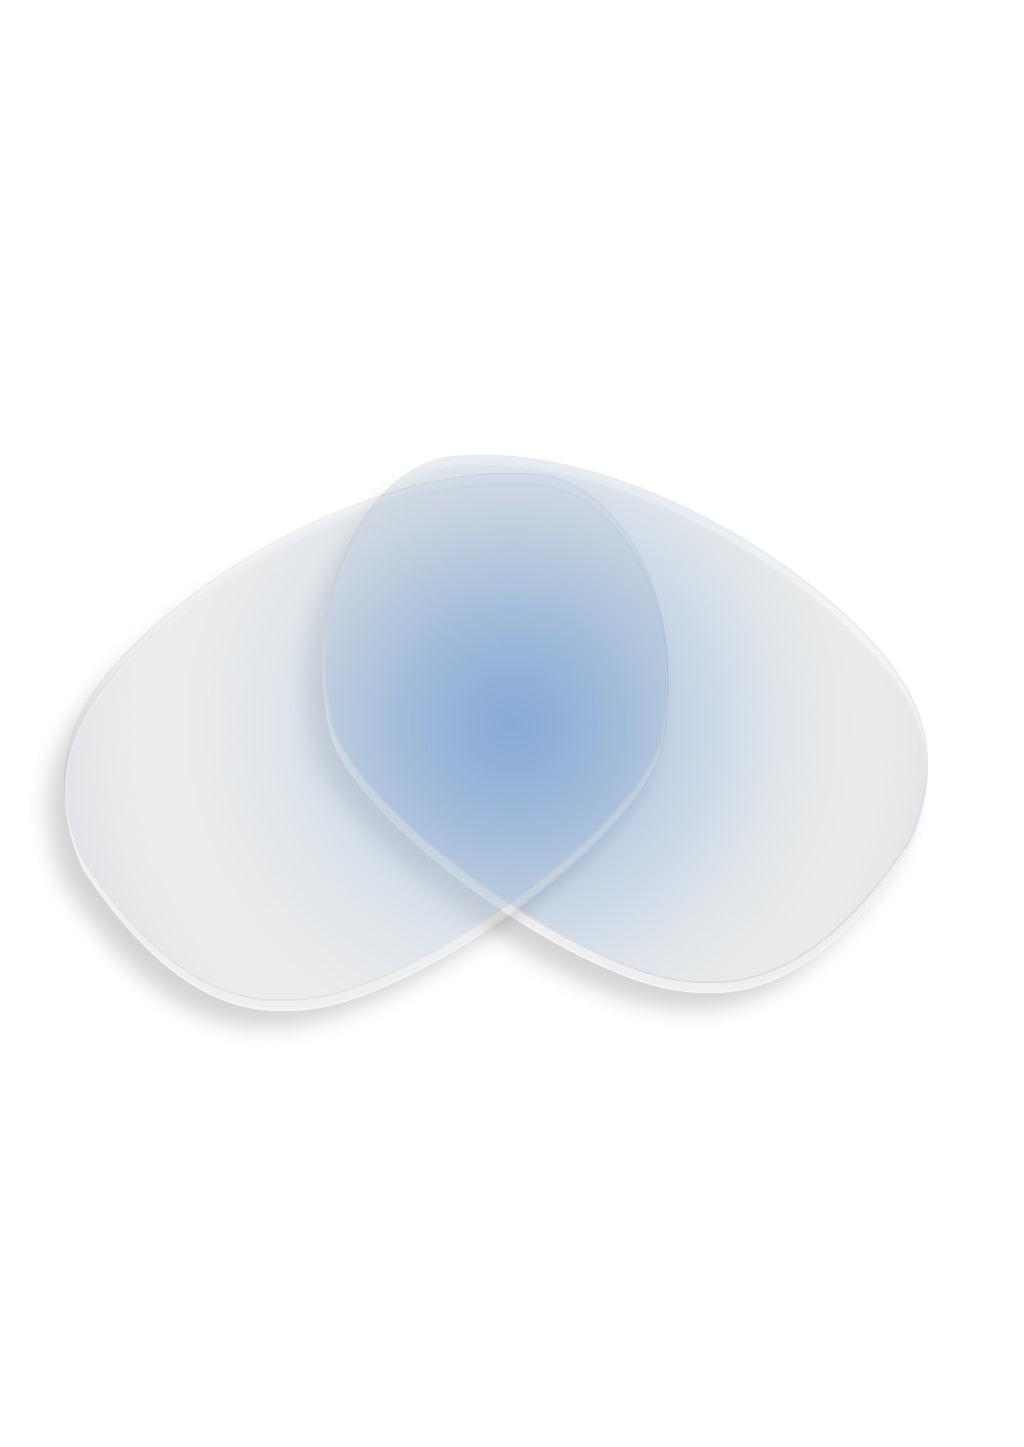 Extra lenses for Titan V2 sunglasses. This is blue photochromic.